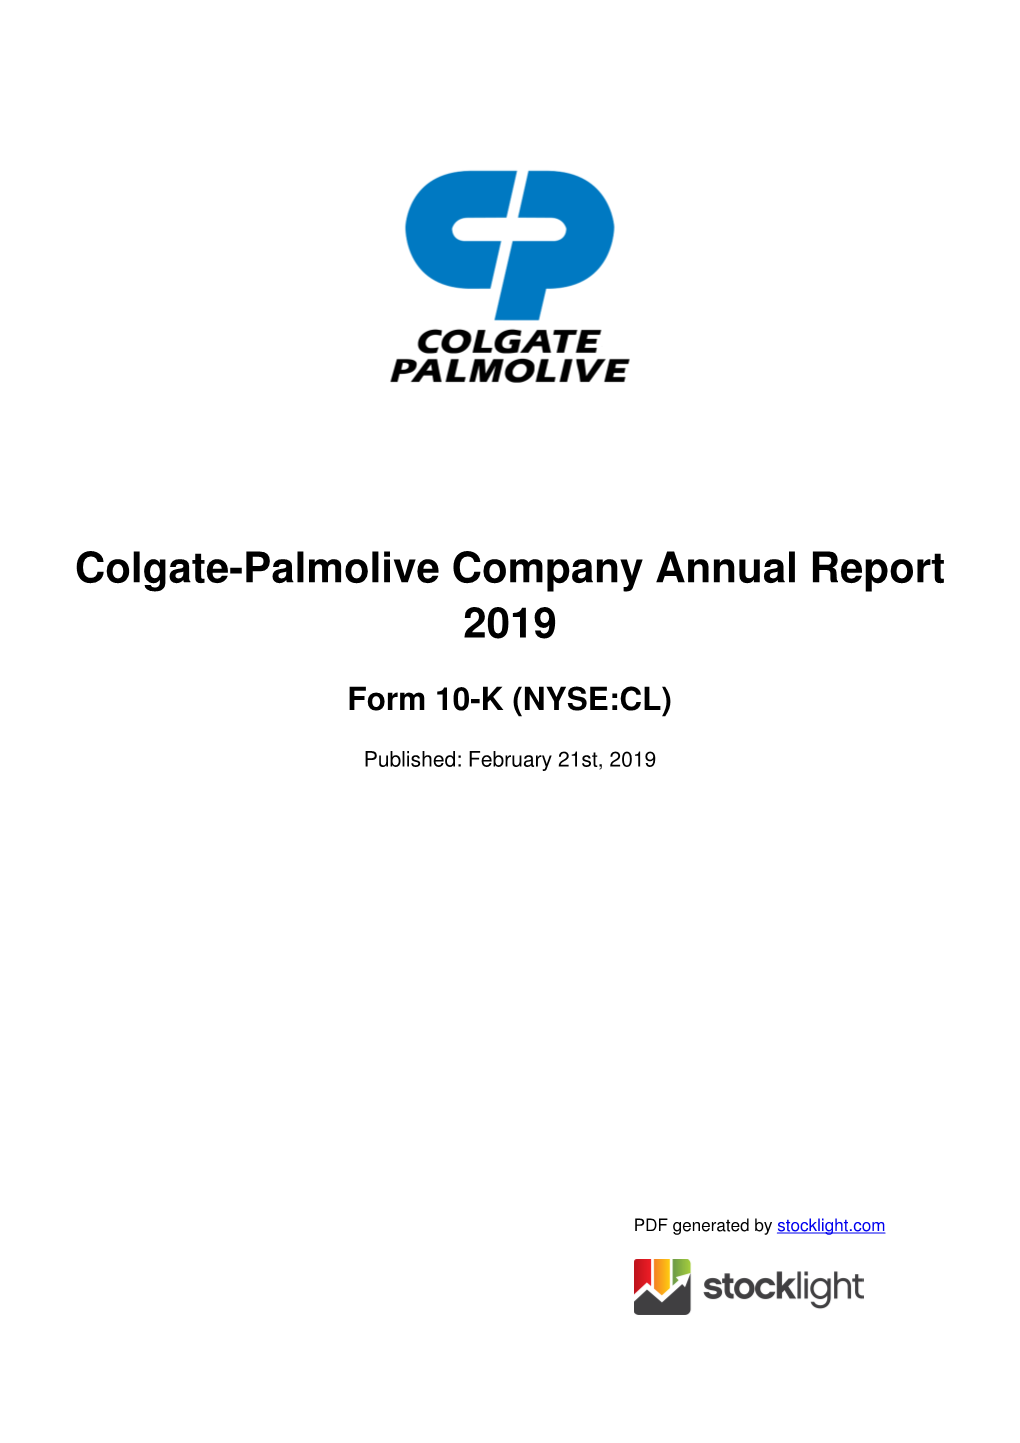 Colgate-Palmolive Company Annual Report 2019